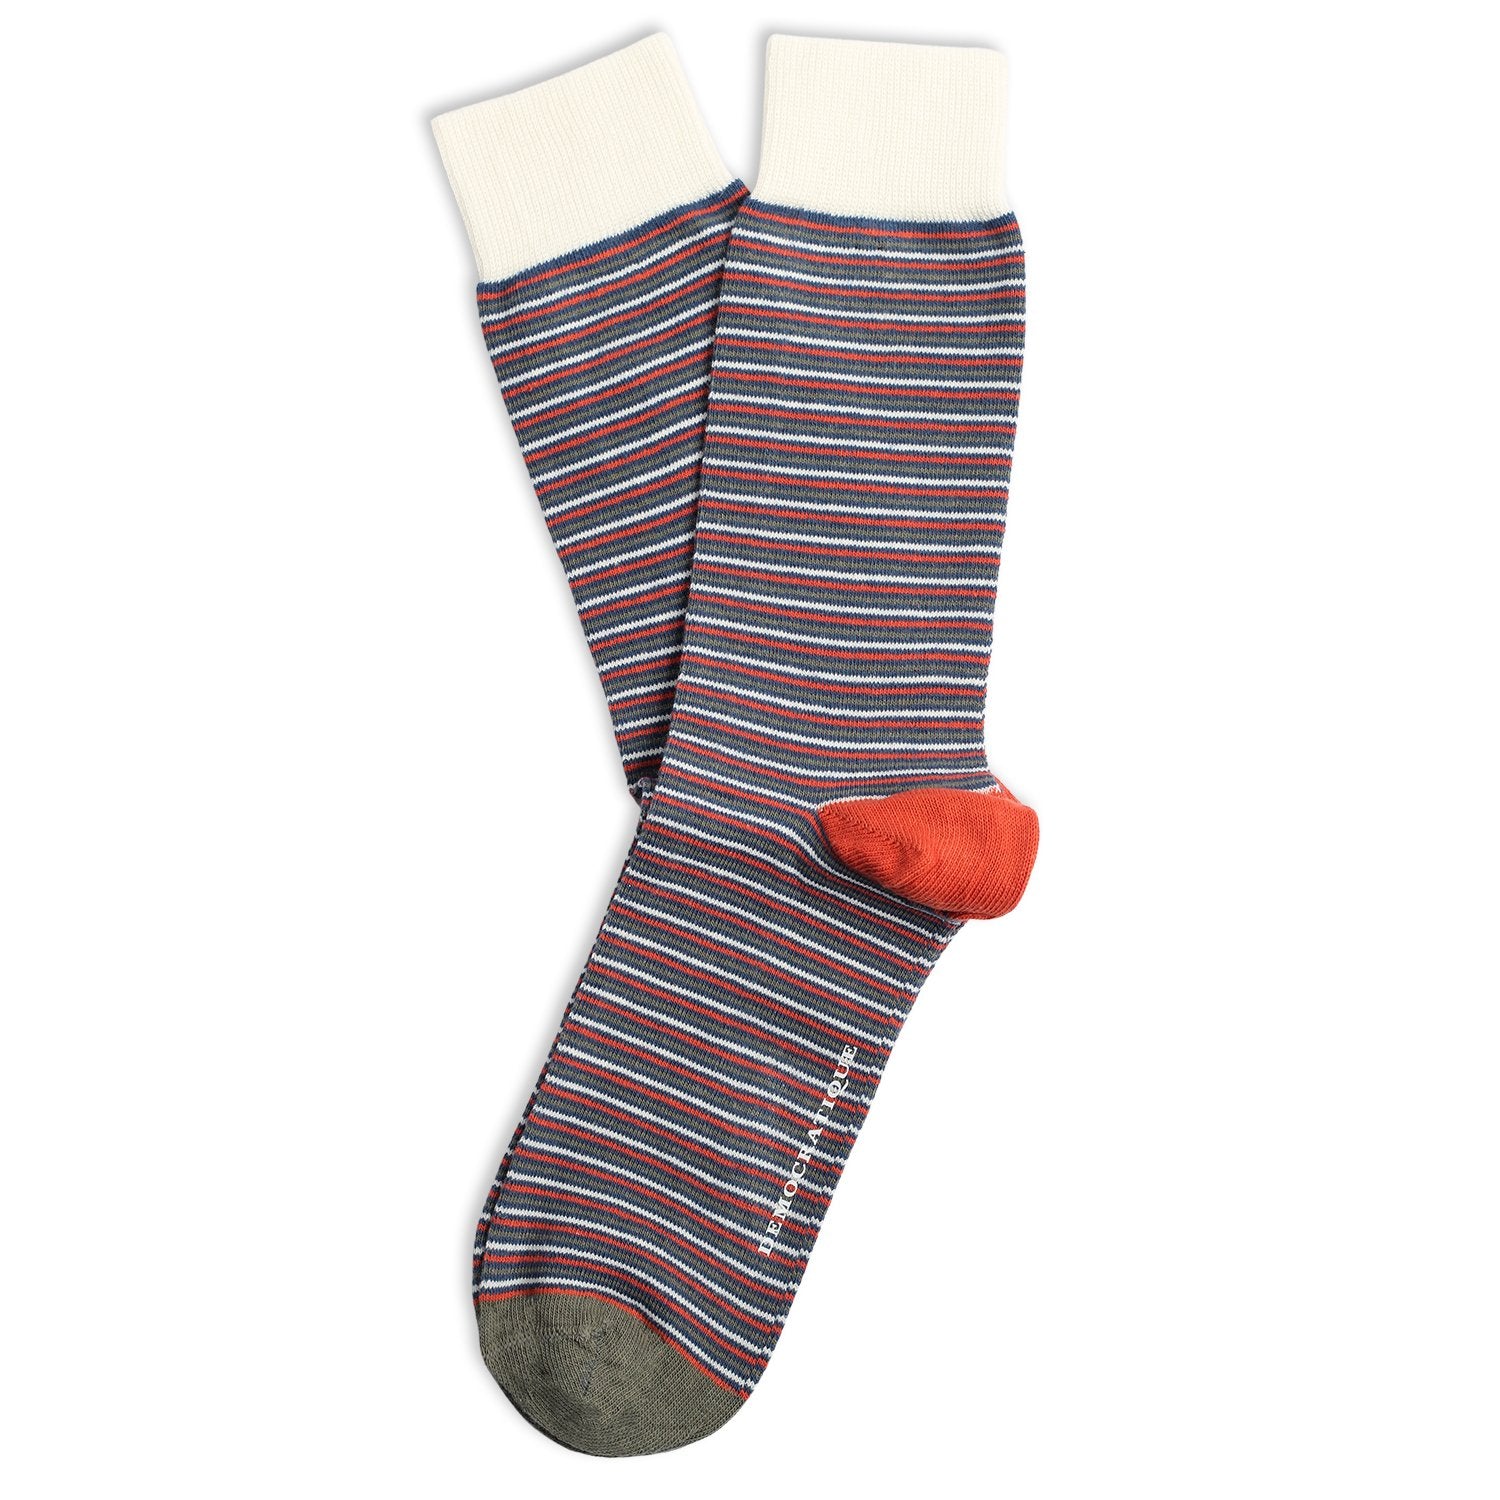 Longitude Stripe Socks | Ultralight Stripes Socks | Democratique socks